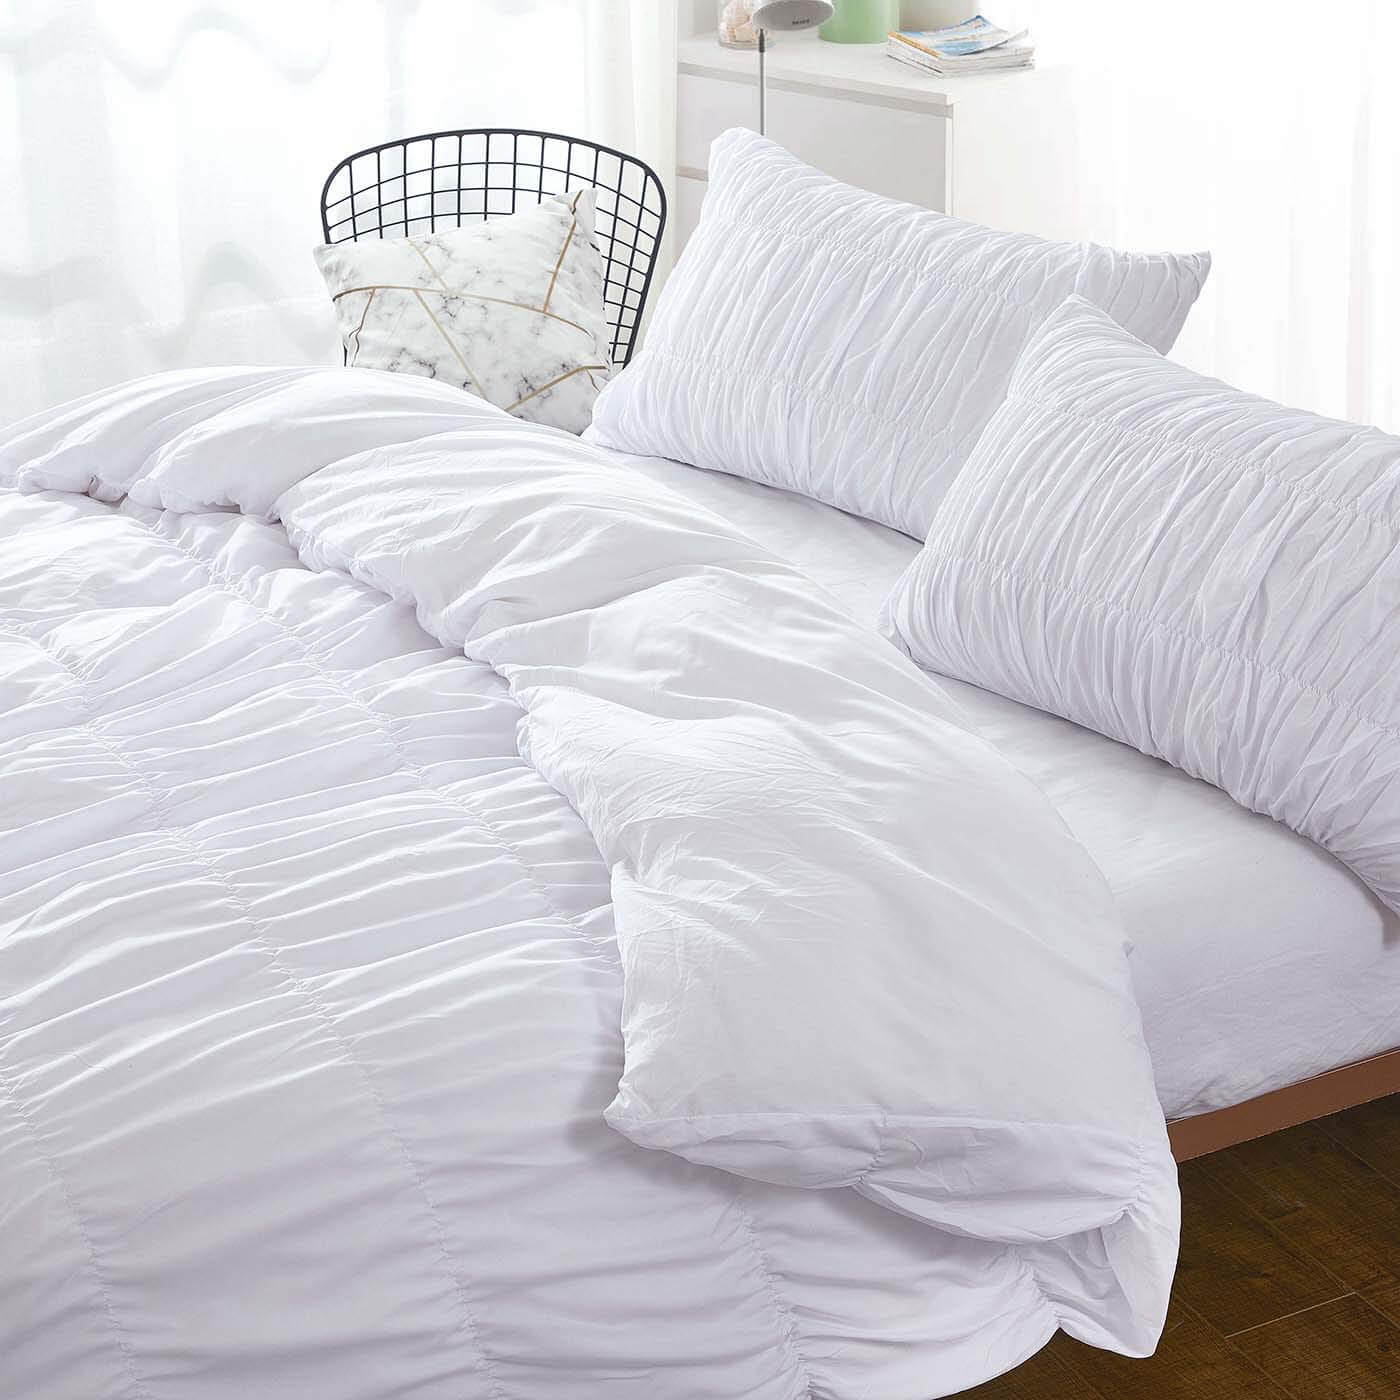 Duvet Cover, Full/Queen, White - Bedding - Duvet Covers & Shams - Bedroom Decor